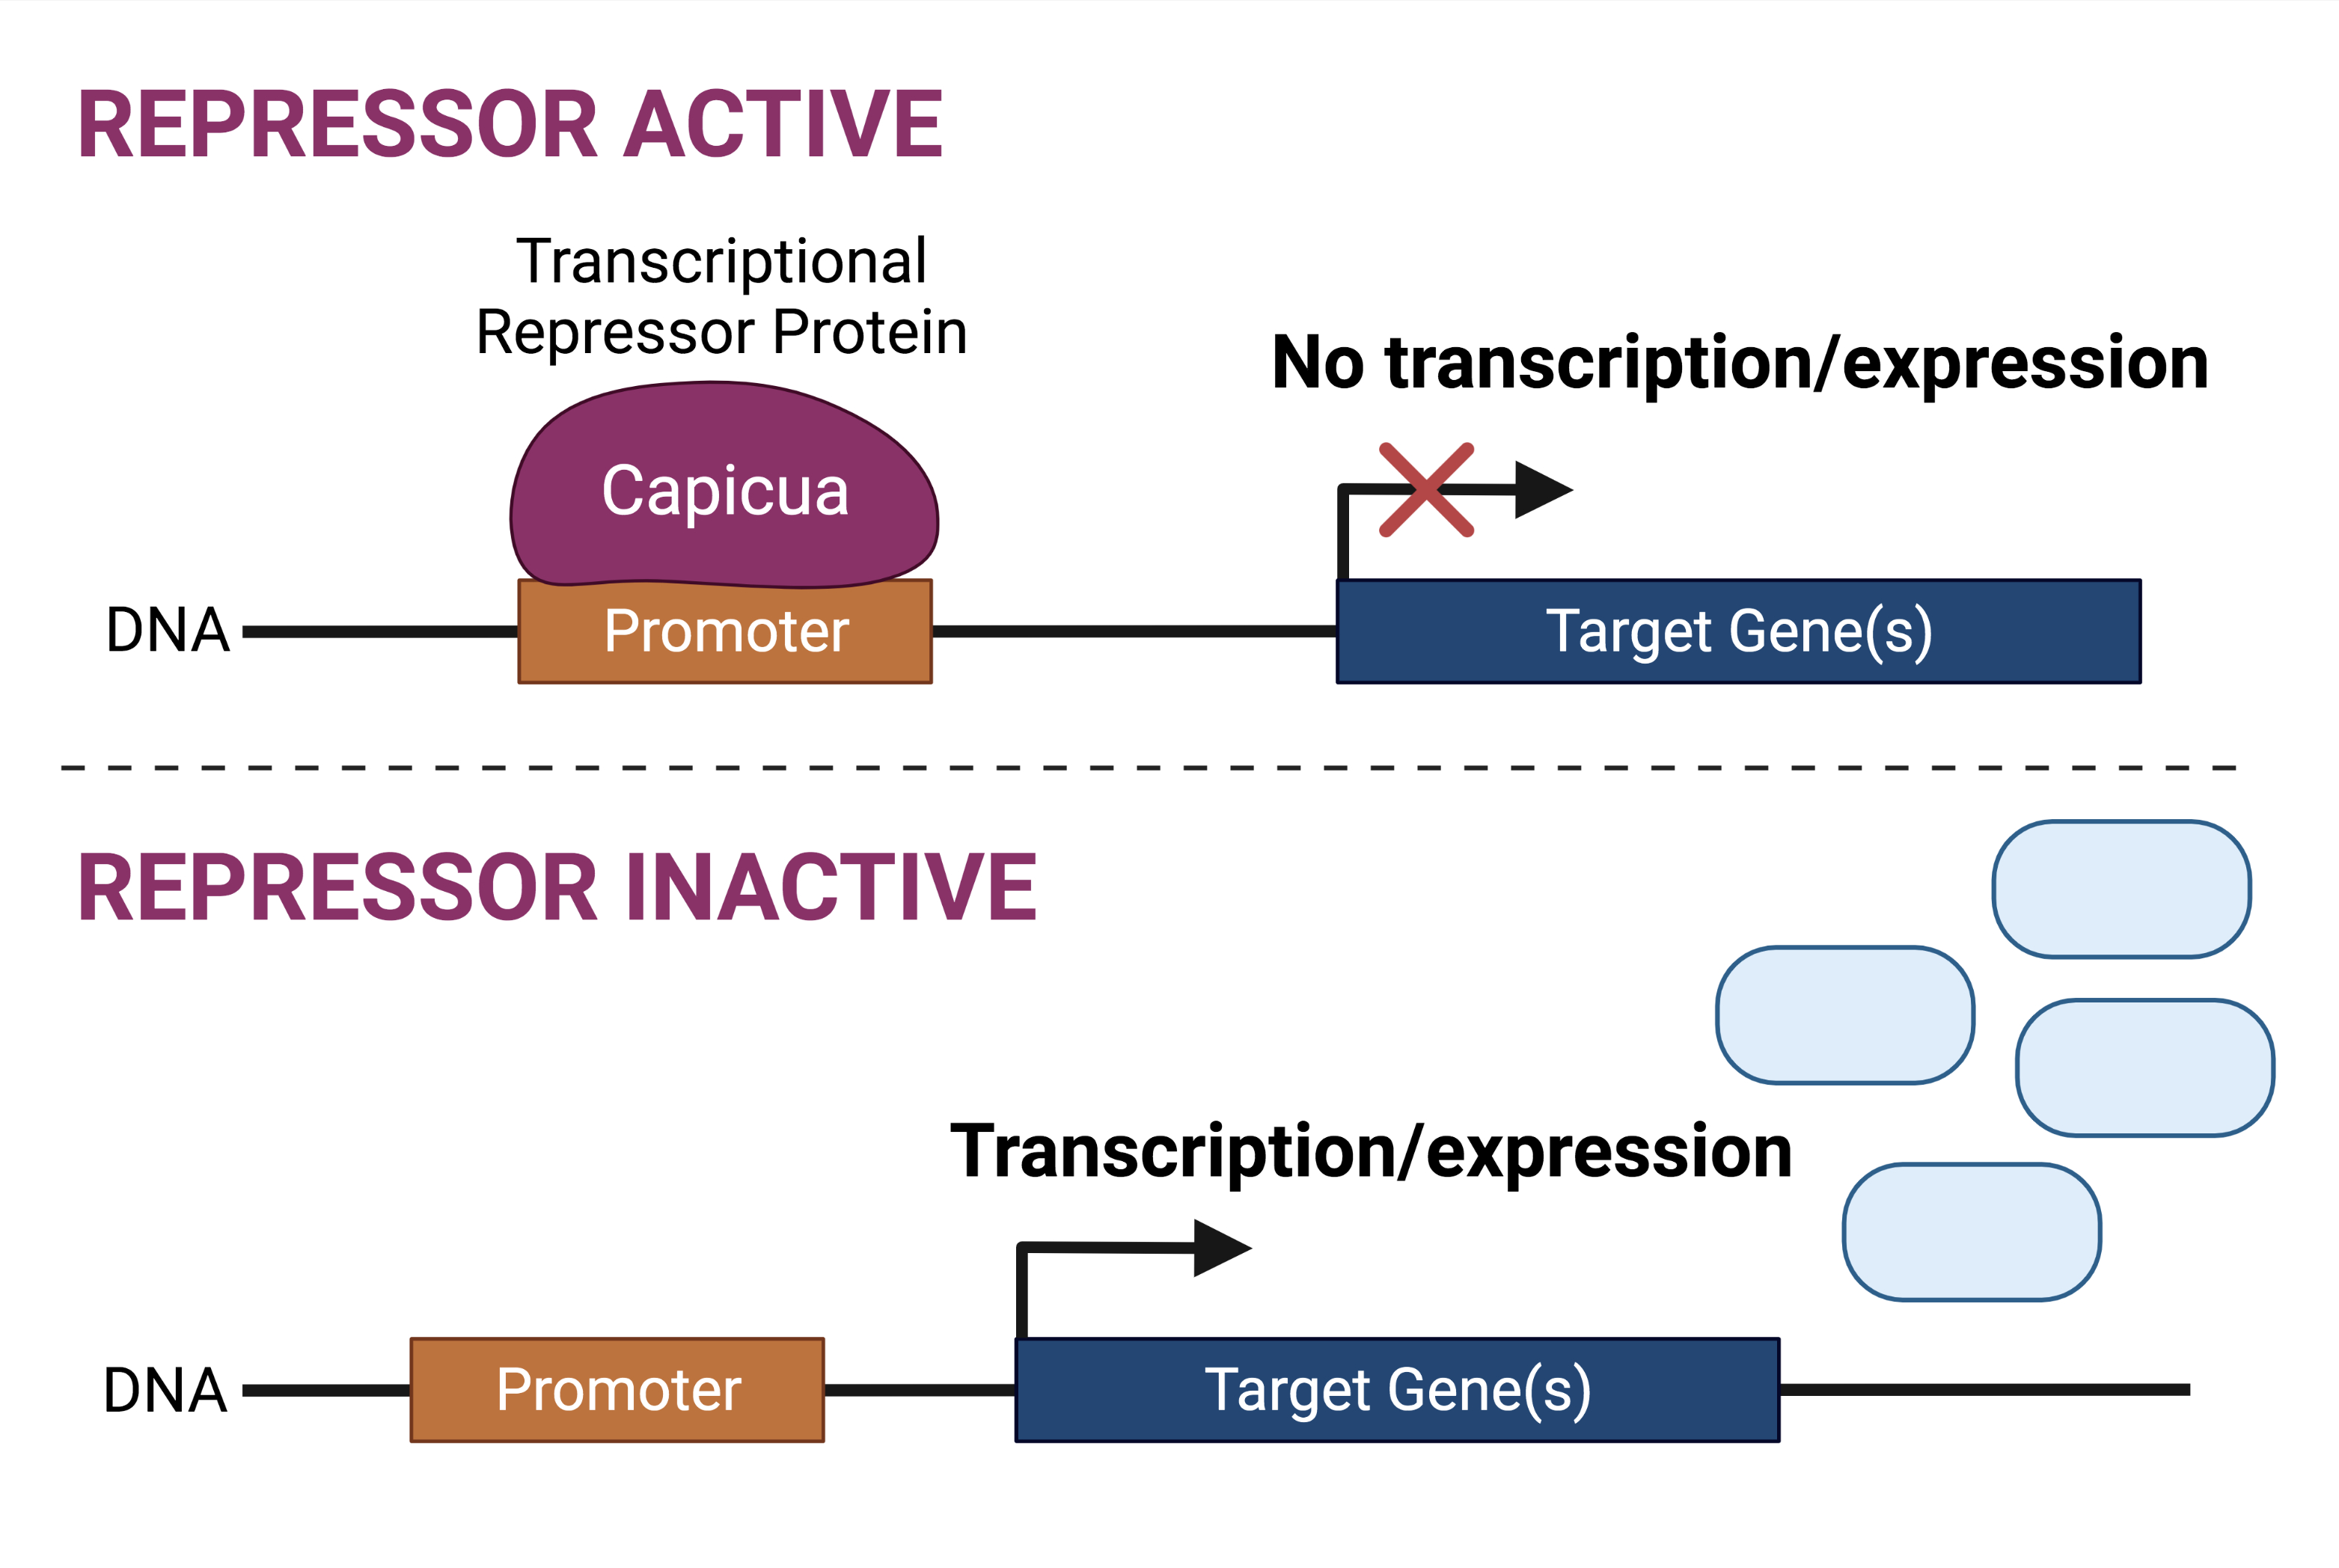 Transcriptional repressor activity.